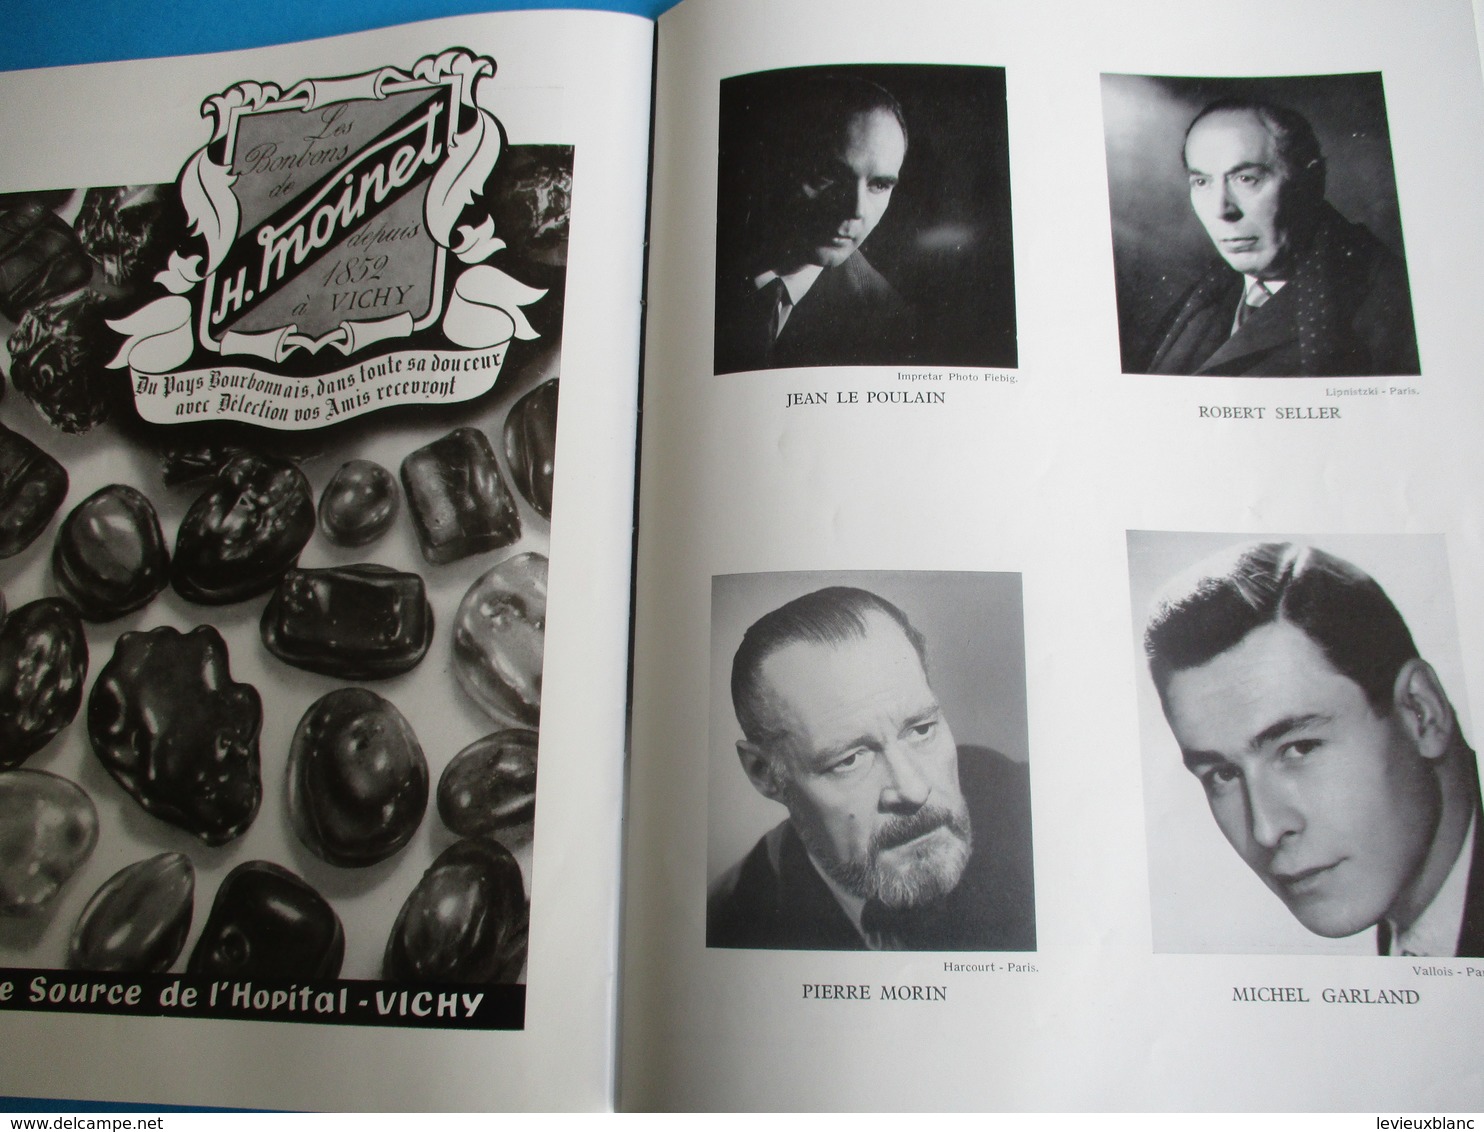 Théâtre des Fleurs/Grand Casino de VICHY/Saison artistique/R Lamoureux,B Brunoy,M Sologne,J Poiret, etc/ 1957    PROG178